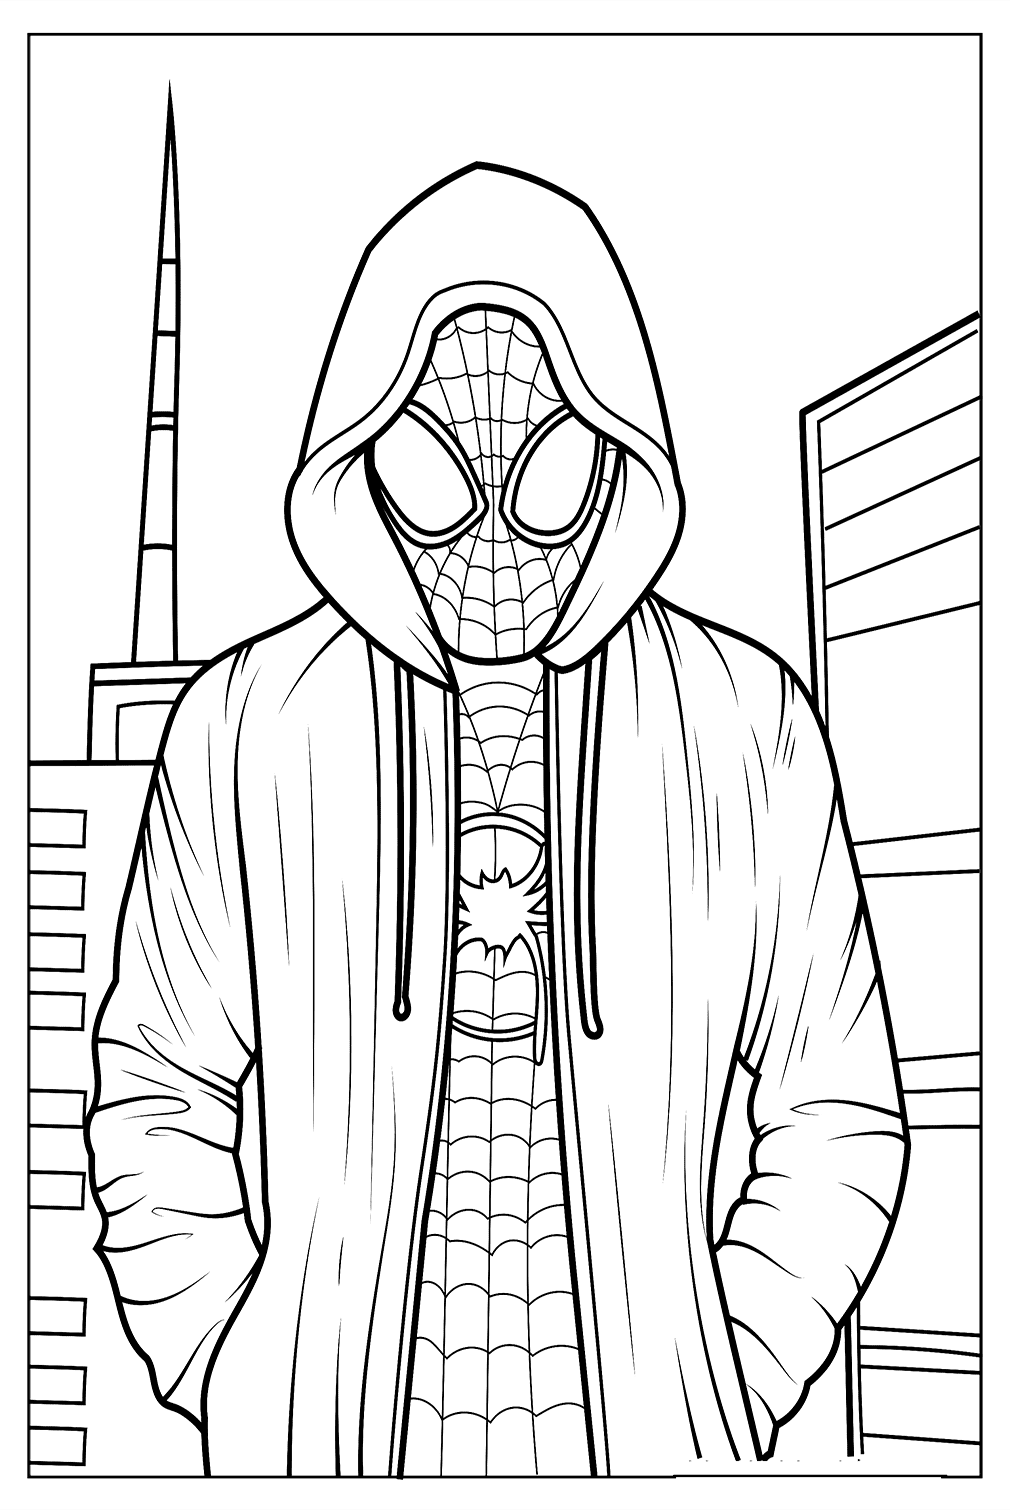 Pagina da colorare realistica di Miles Moralees da Spider-Man: Across the Spider